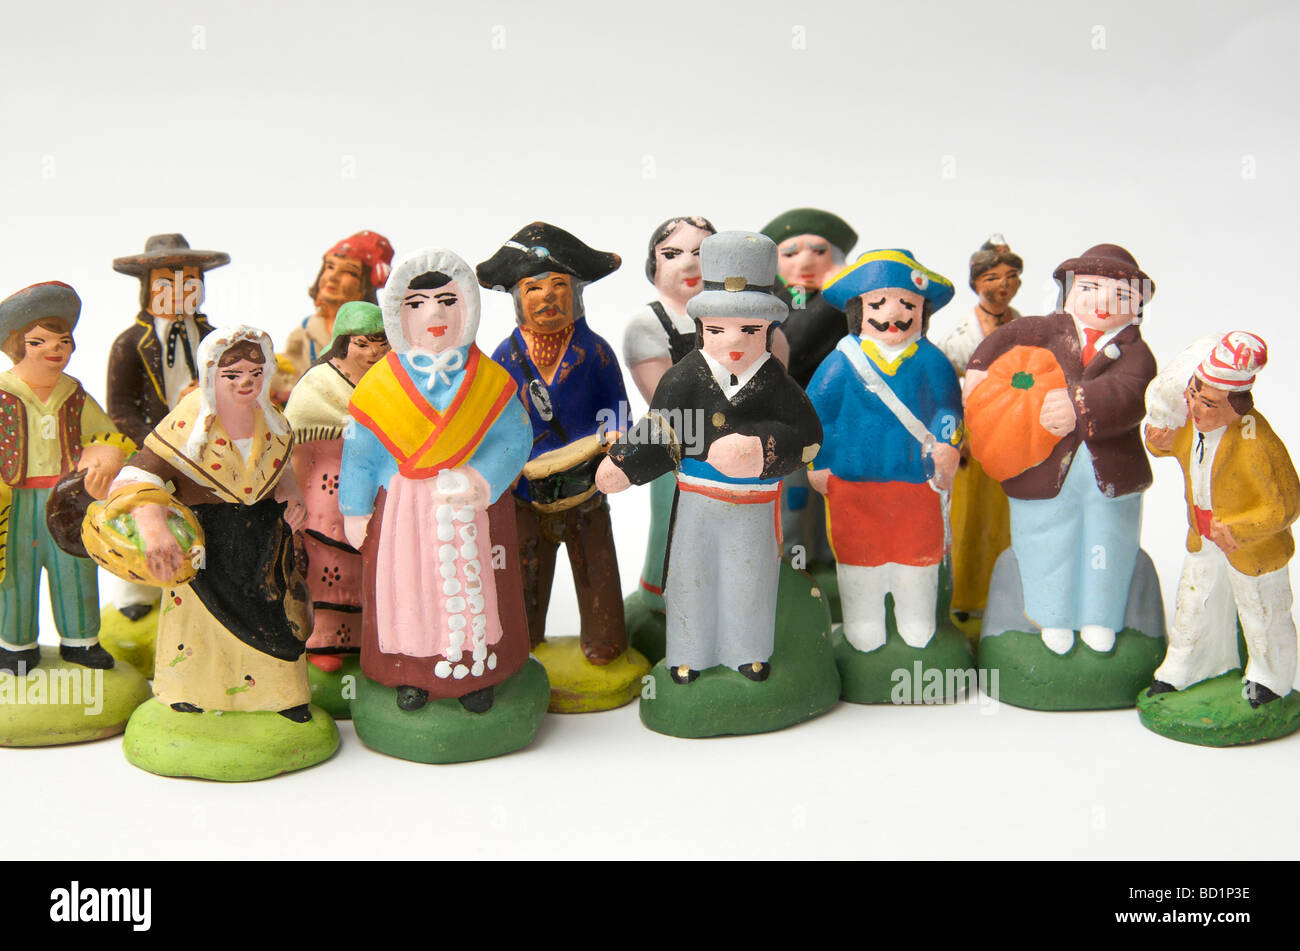 Santons en terre cuite céramique traditionnelle française de figurines villageois Provence, France Banque D'Images